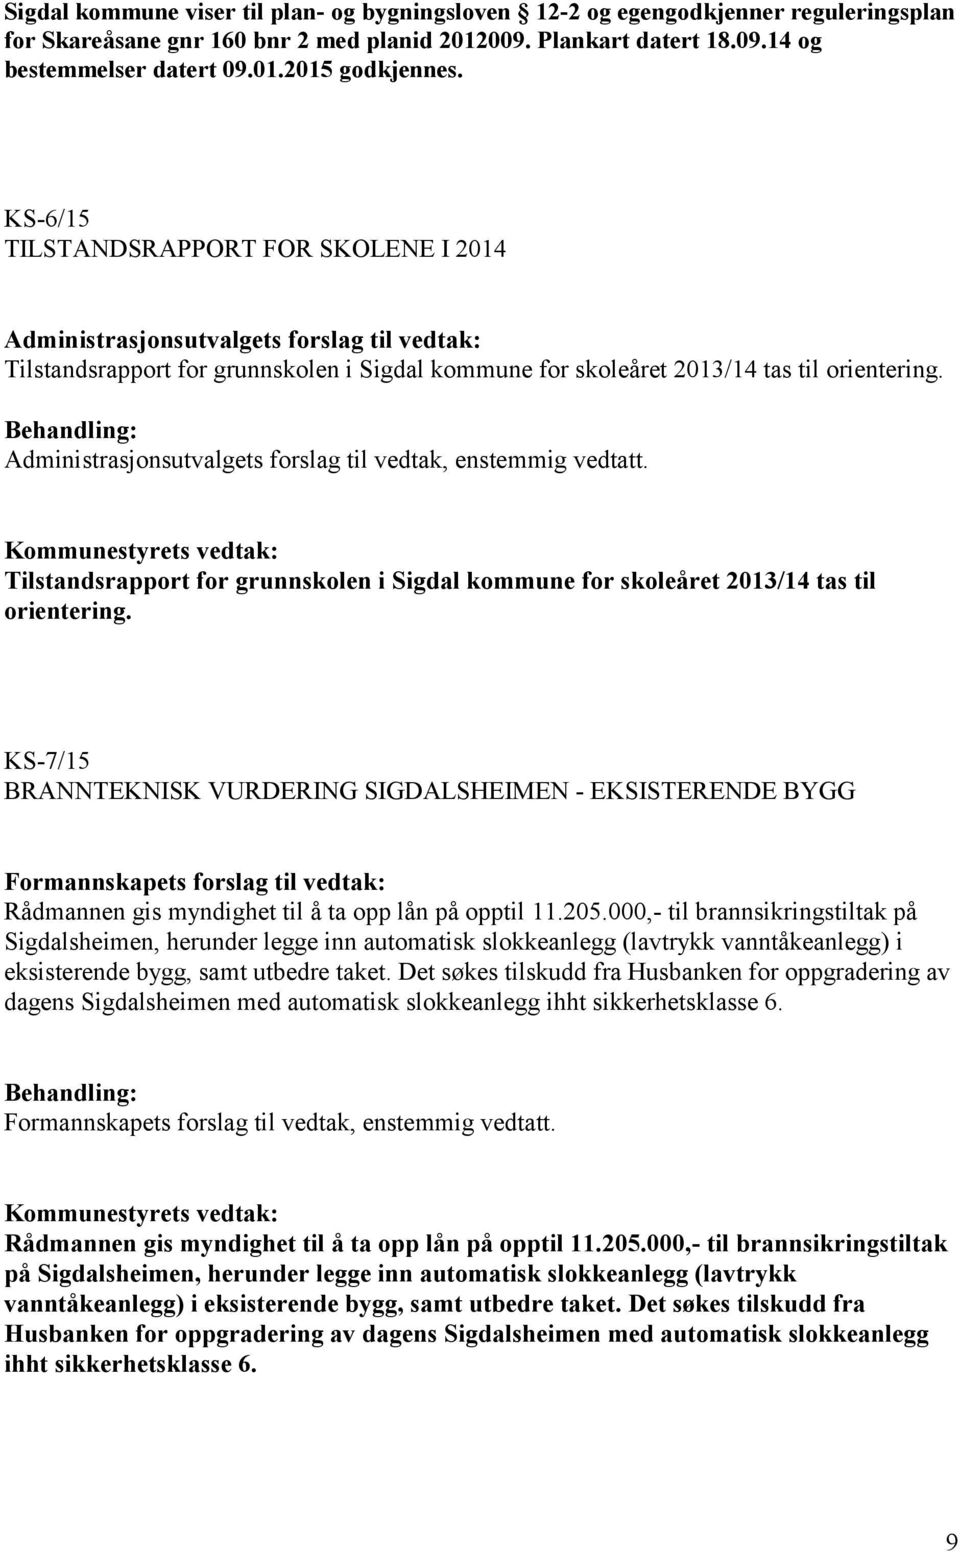 Administrasjonsutvalgets forslag til vedtak, enstemmig vedtatt. Tilstandsrapport for grunnskolen i Sigdal kommune for skoleåret 2013/14 tas til orientering.